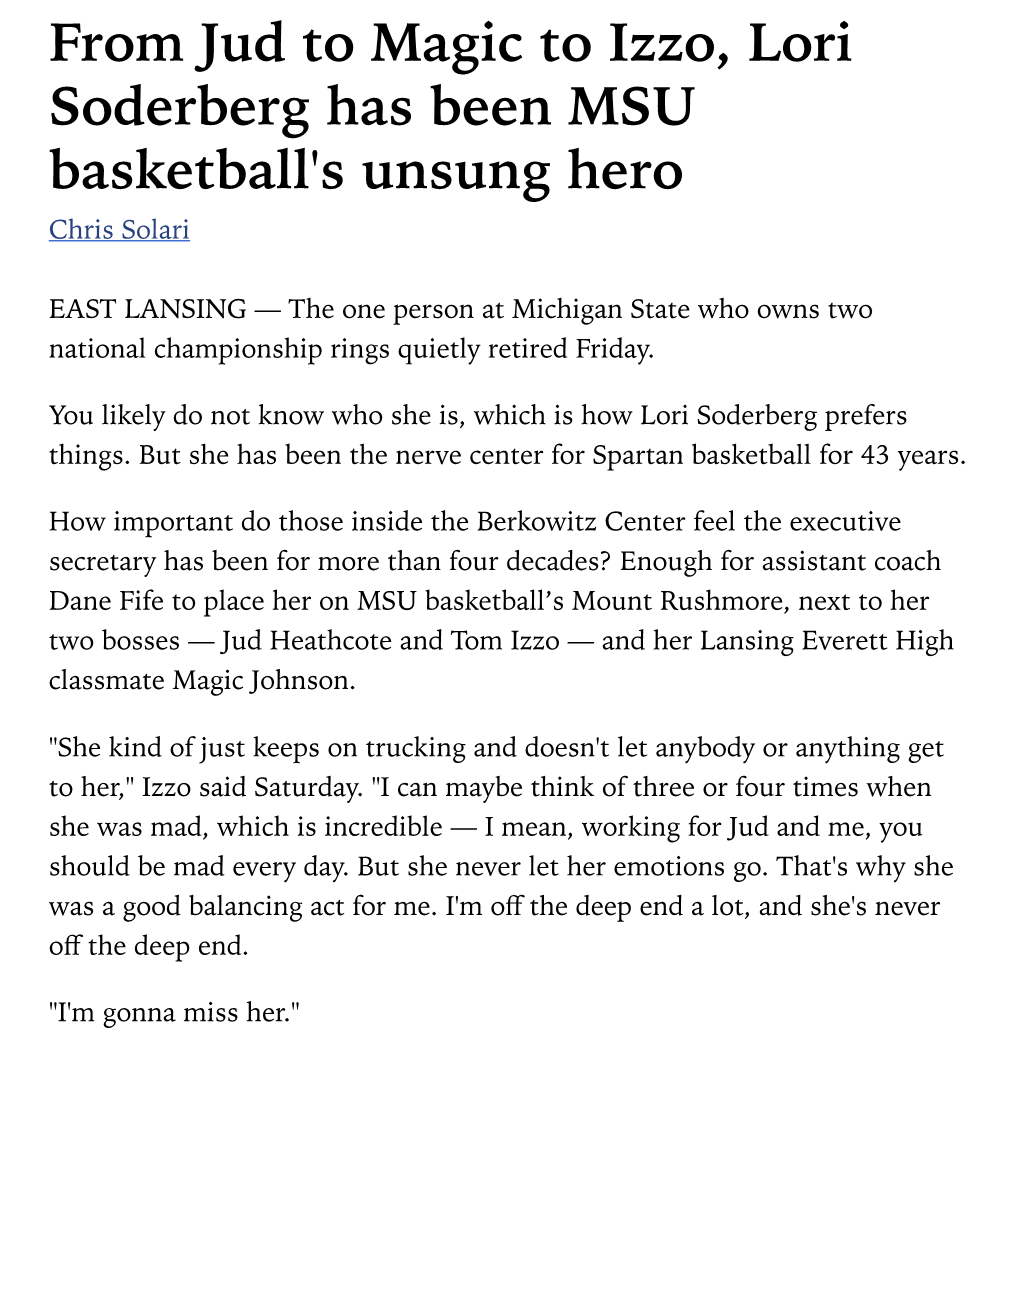 From Jud to Magic to Izzo, Lori Soderberg Has Been MSU Basketball's Unsung Hero Chris Solari